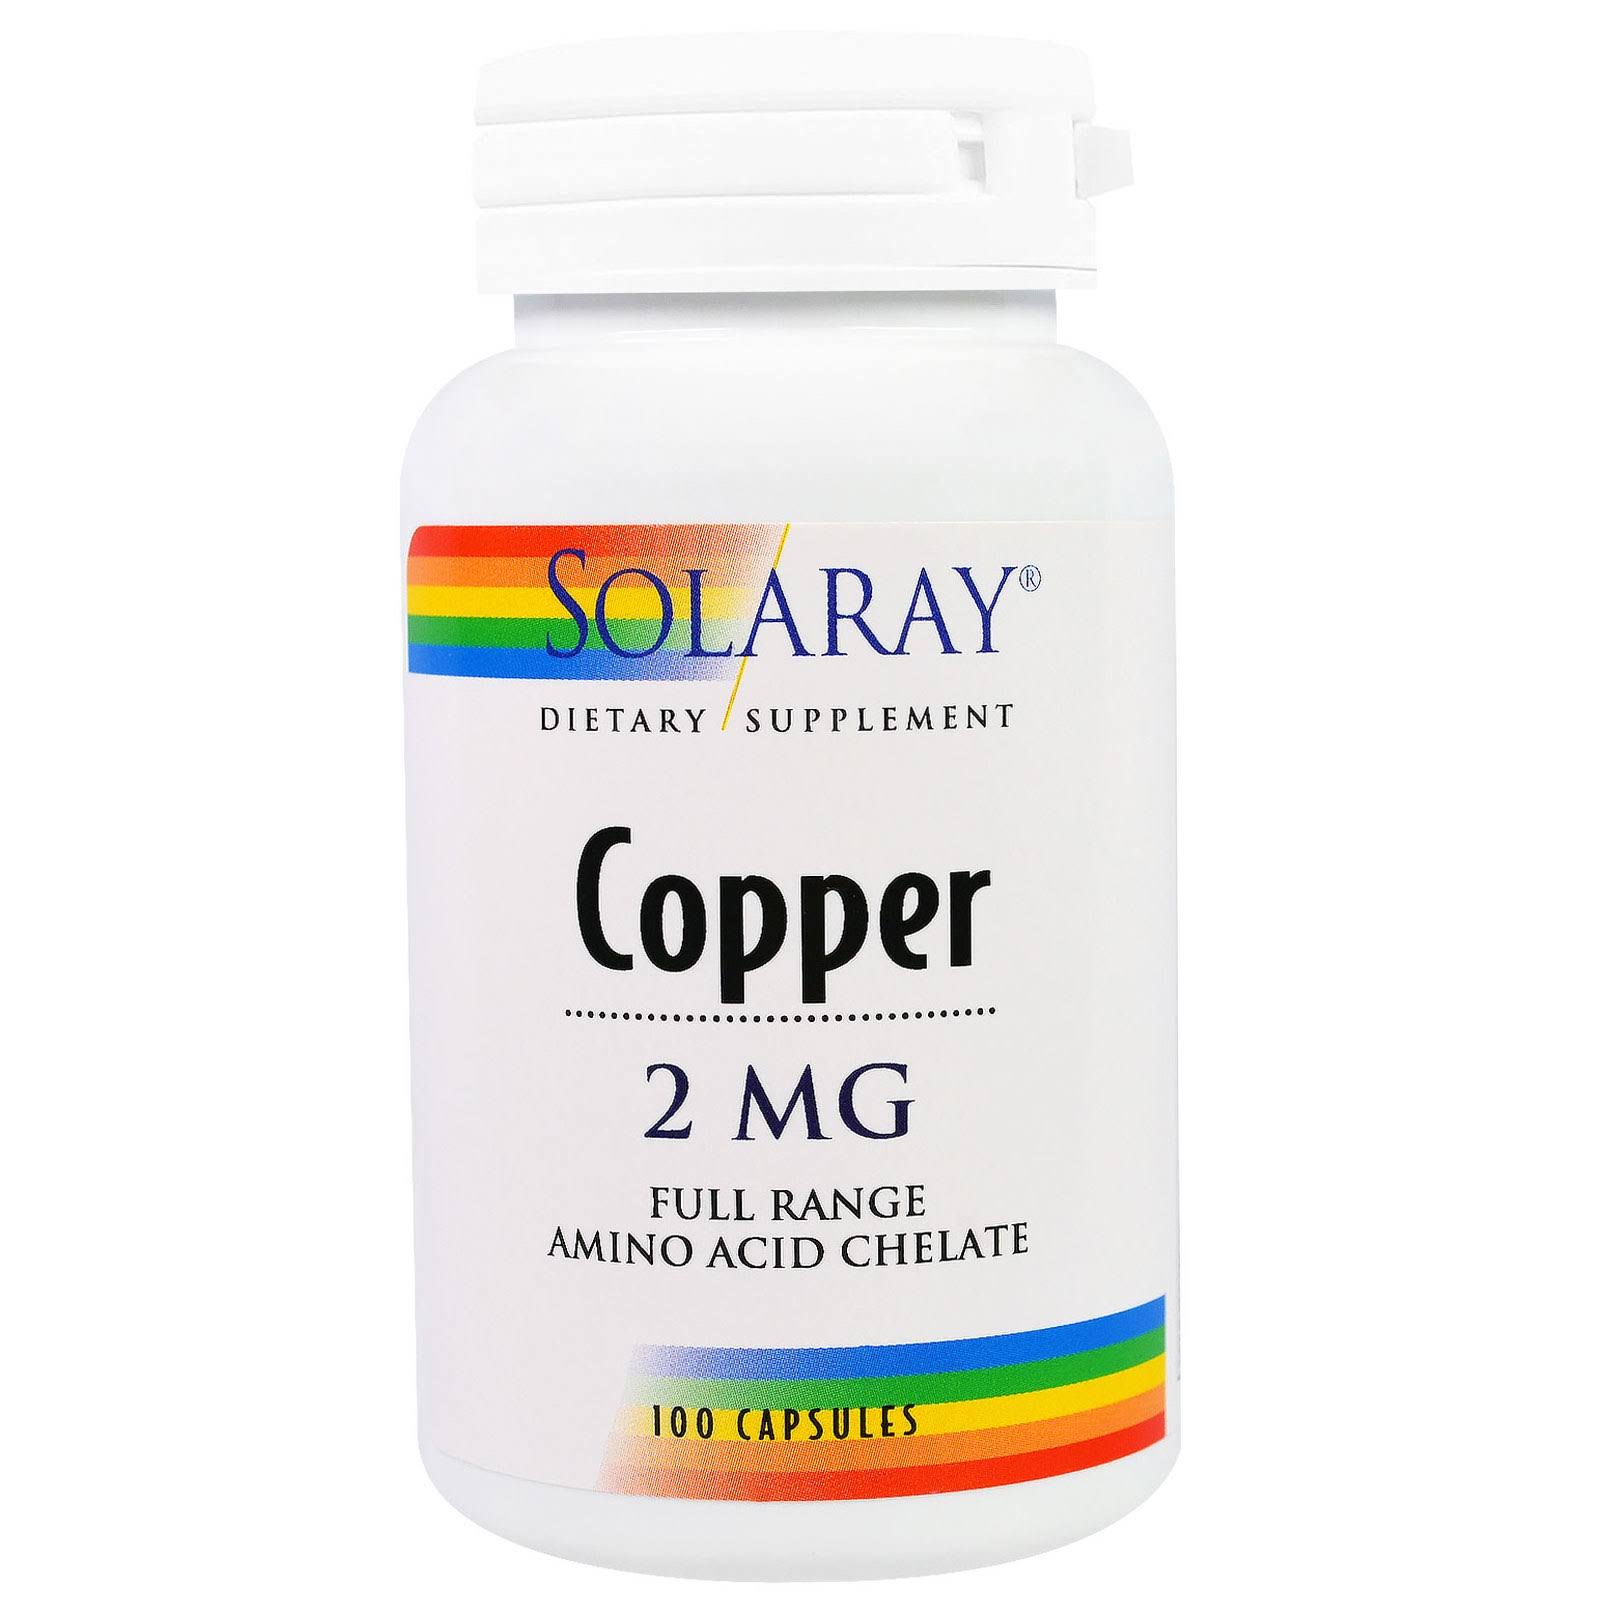 Solaray Copper Capsules - 2mg, 100 capsules